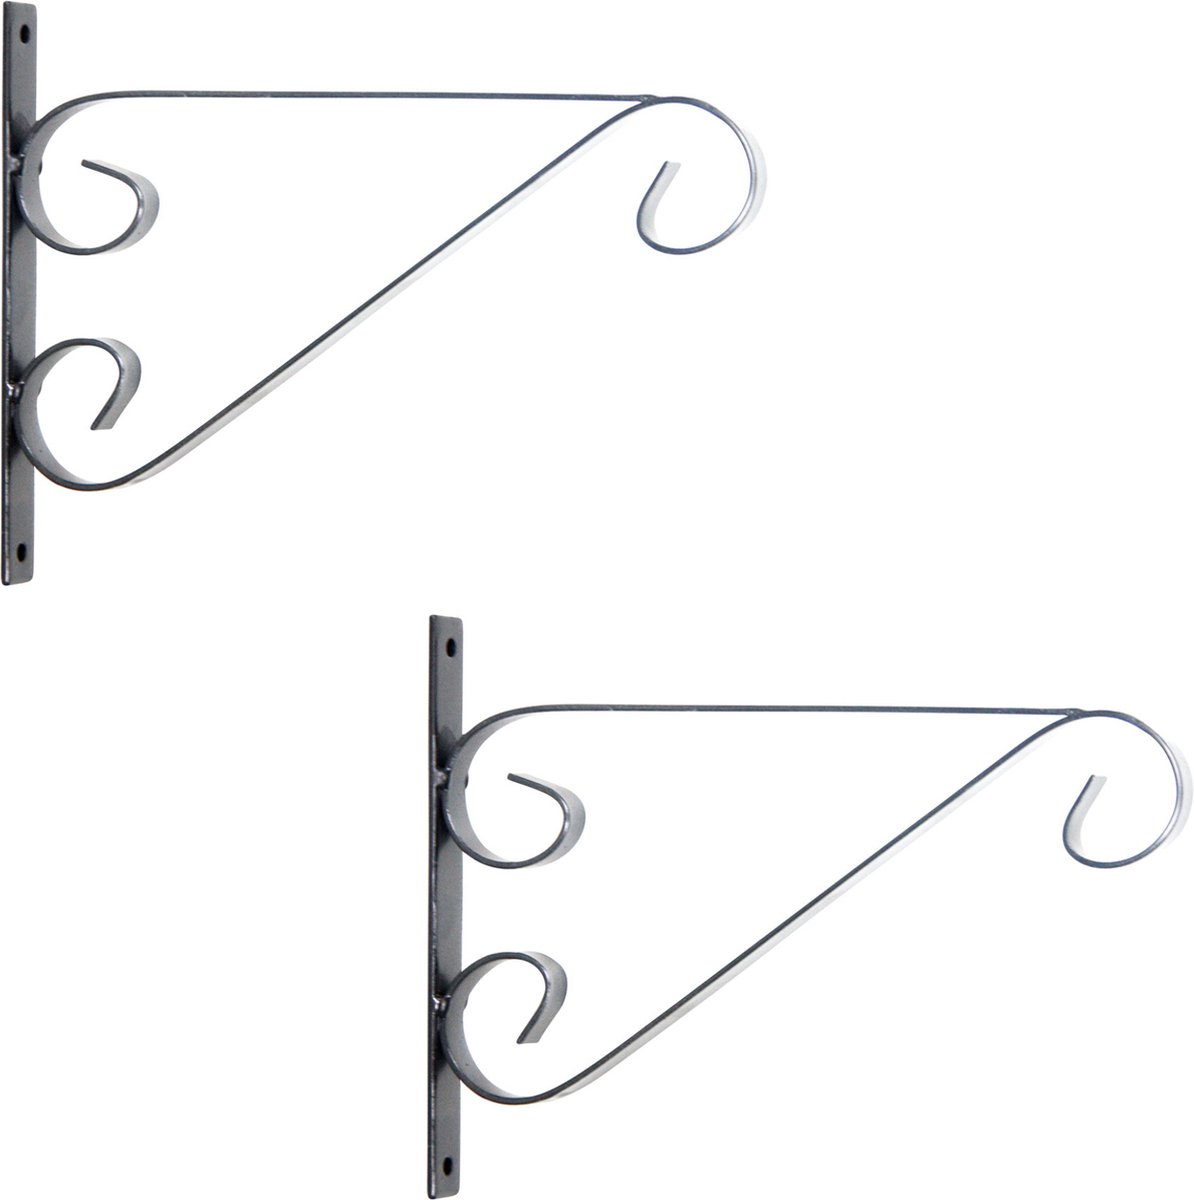 3x Zilveren hangpot haken metaal met krul - 27 x 19 cm - Muurpothangers voor plantenbakken/bloembakken - Tuin/muur decoraties - Merkloos